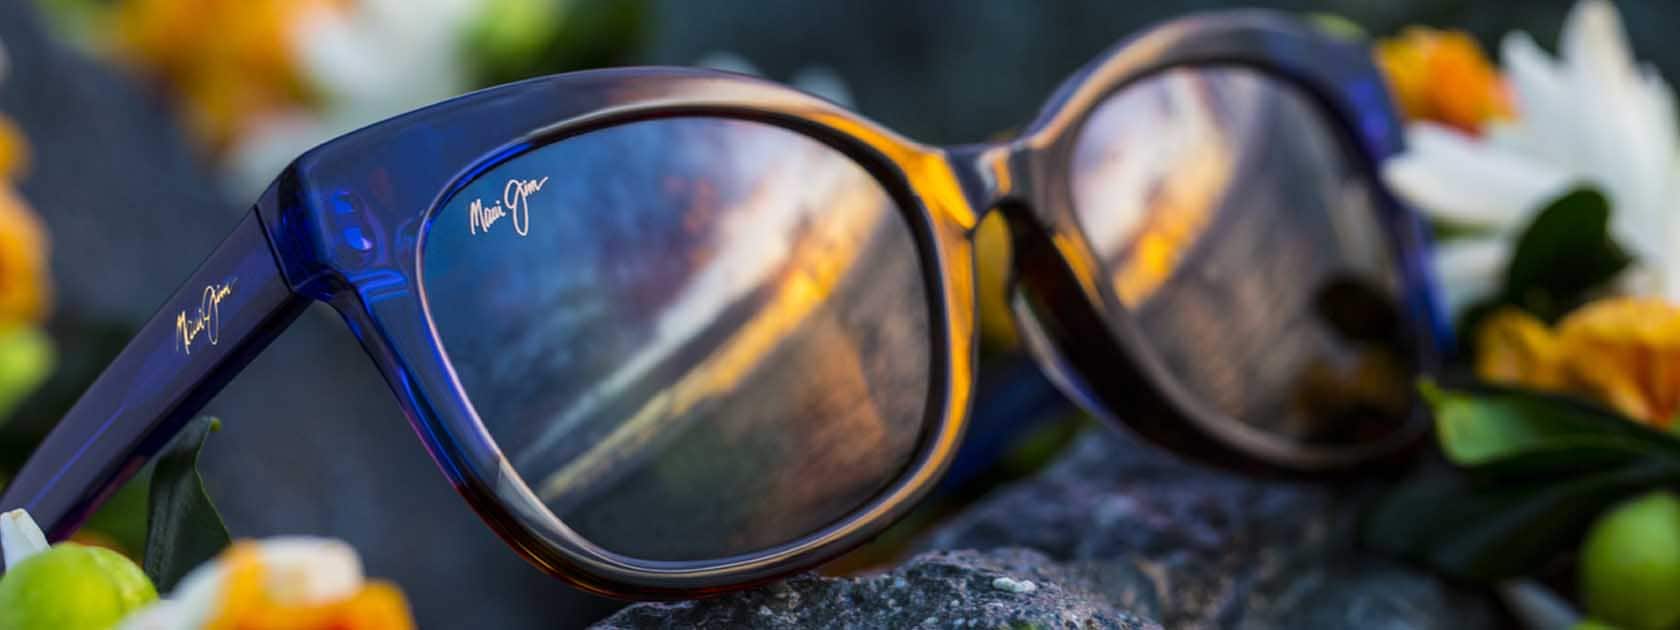 gafas de sol con el cielo reflejado en las lentes, expuestas sobre roca con flores blancas y amarillas y verdes